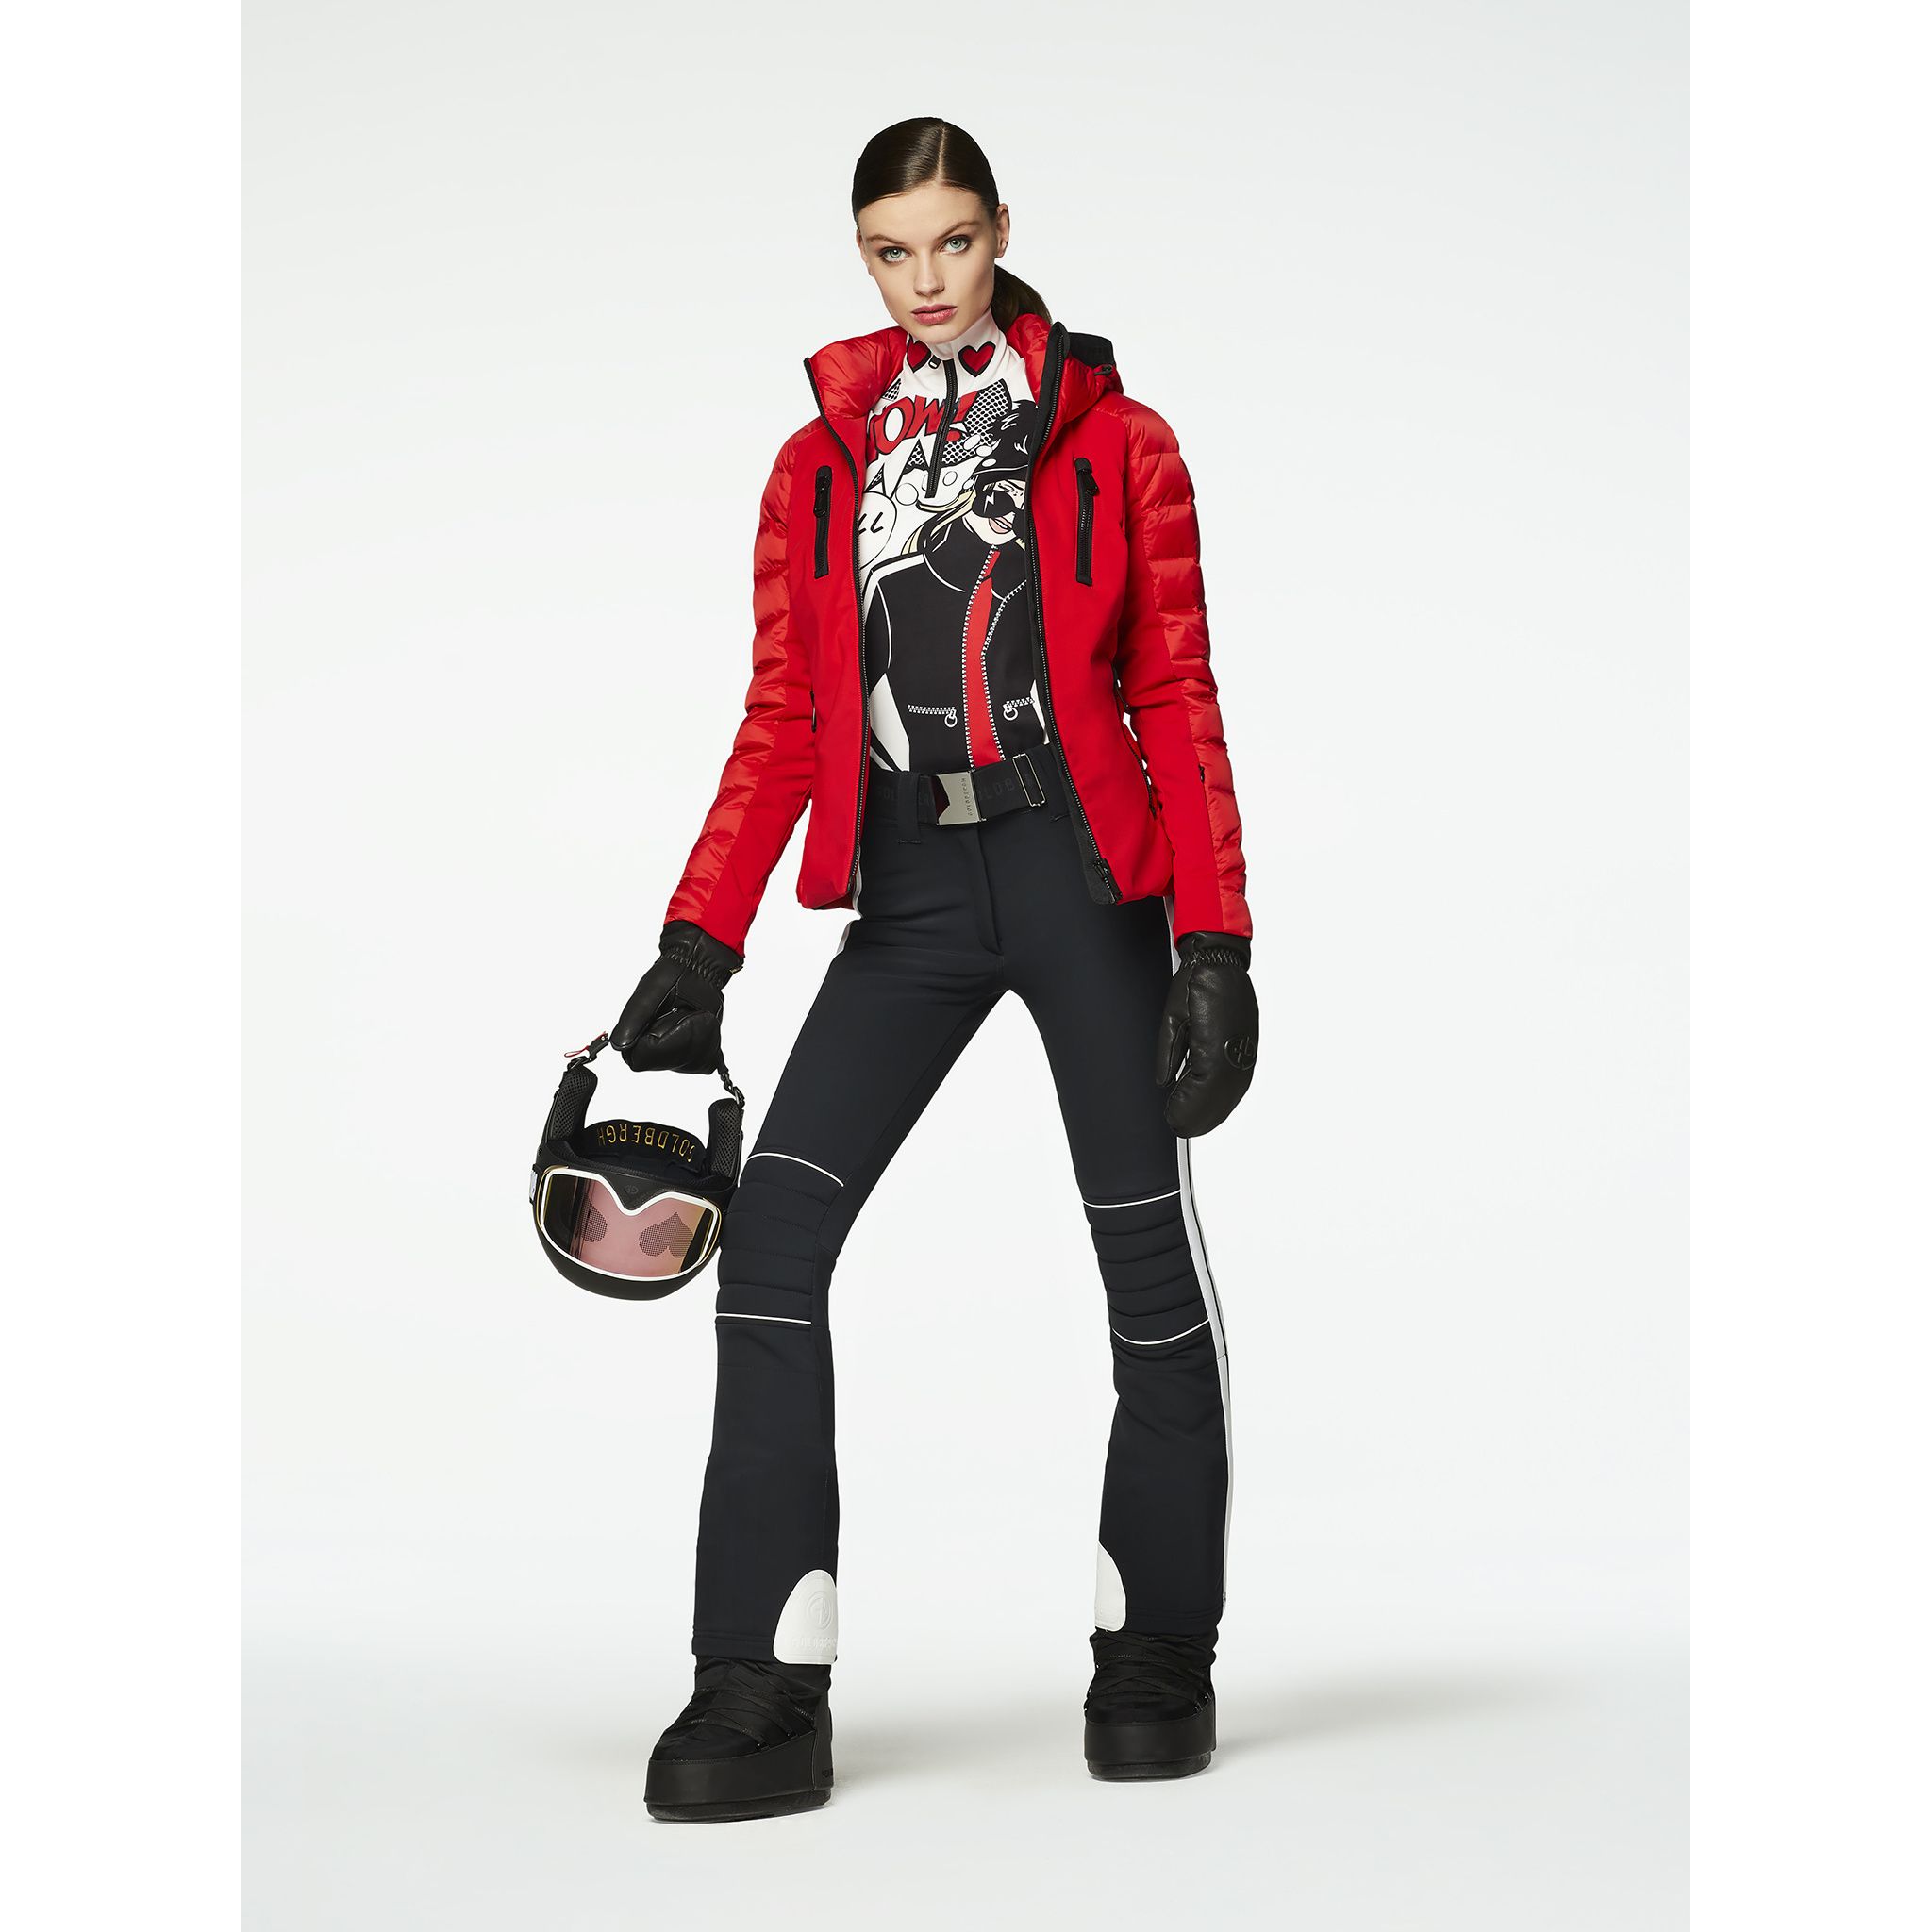 Geci Ski & Snow -  goldbergh FOSFOR Jacket